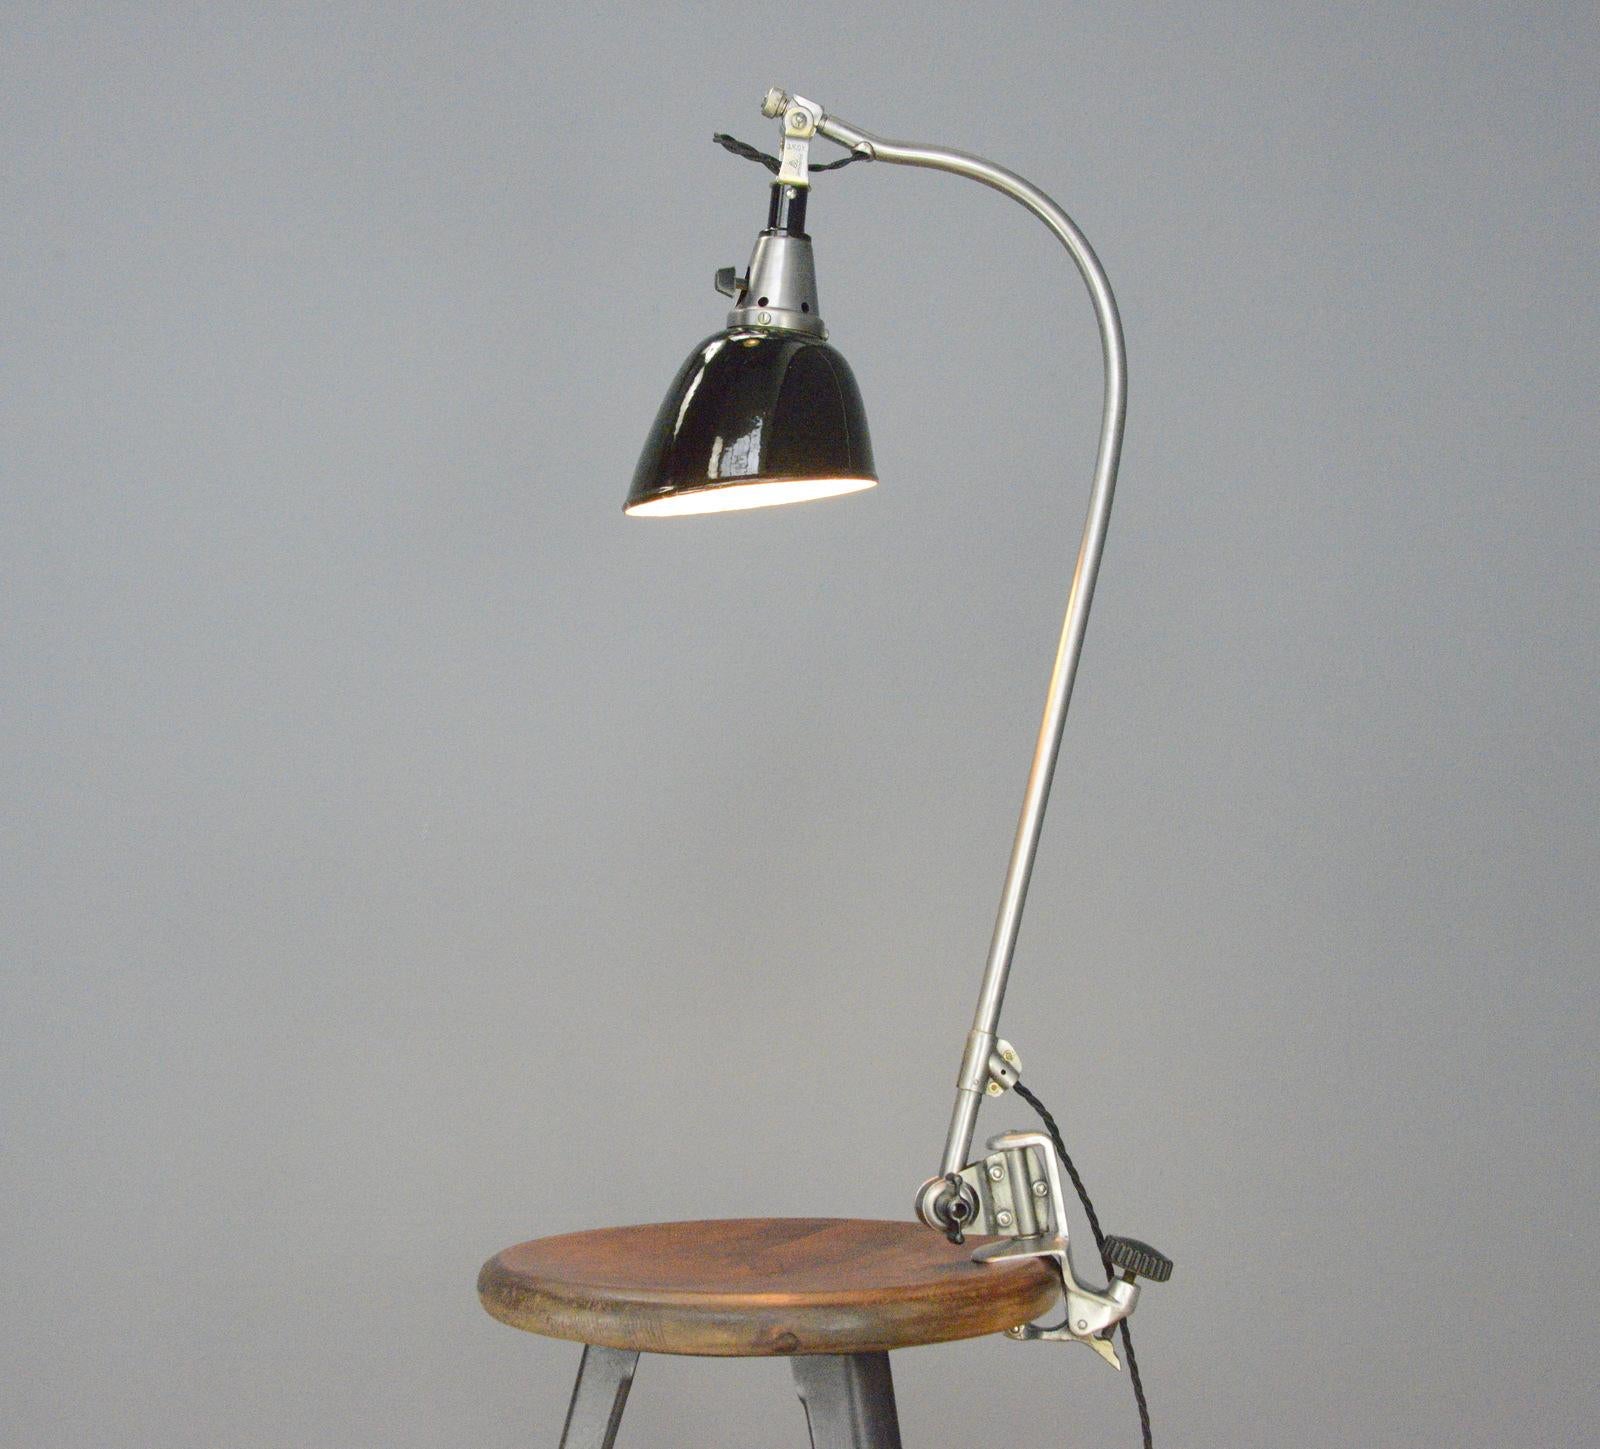 Steel Typ 113 Peitsche Table Lamp by Curt Fischer for Midgard circa 1930s